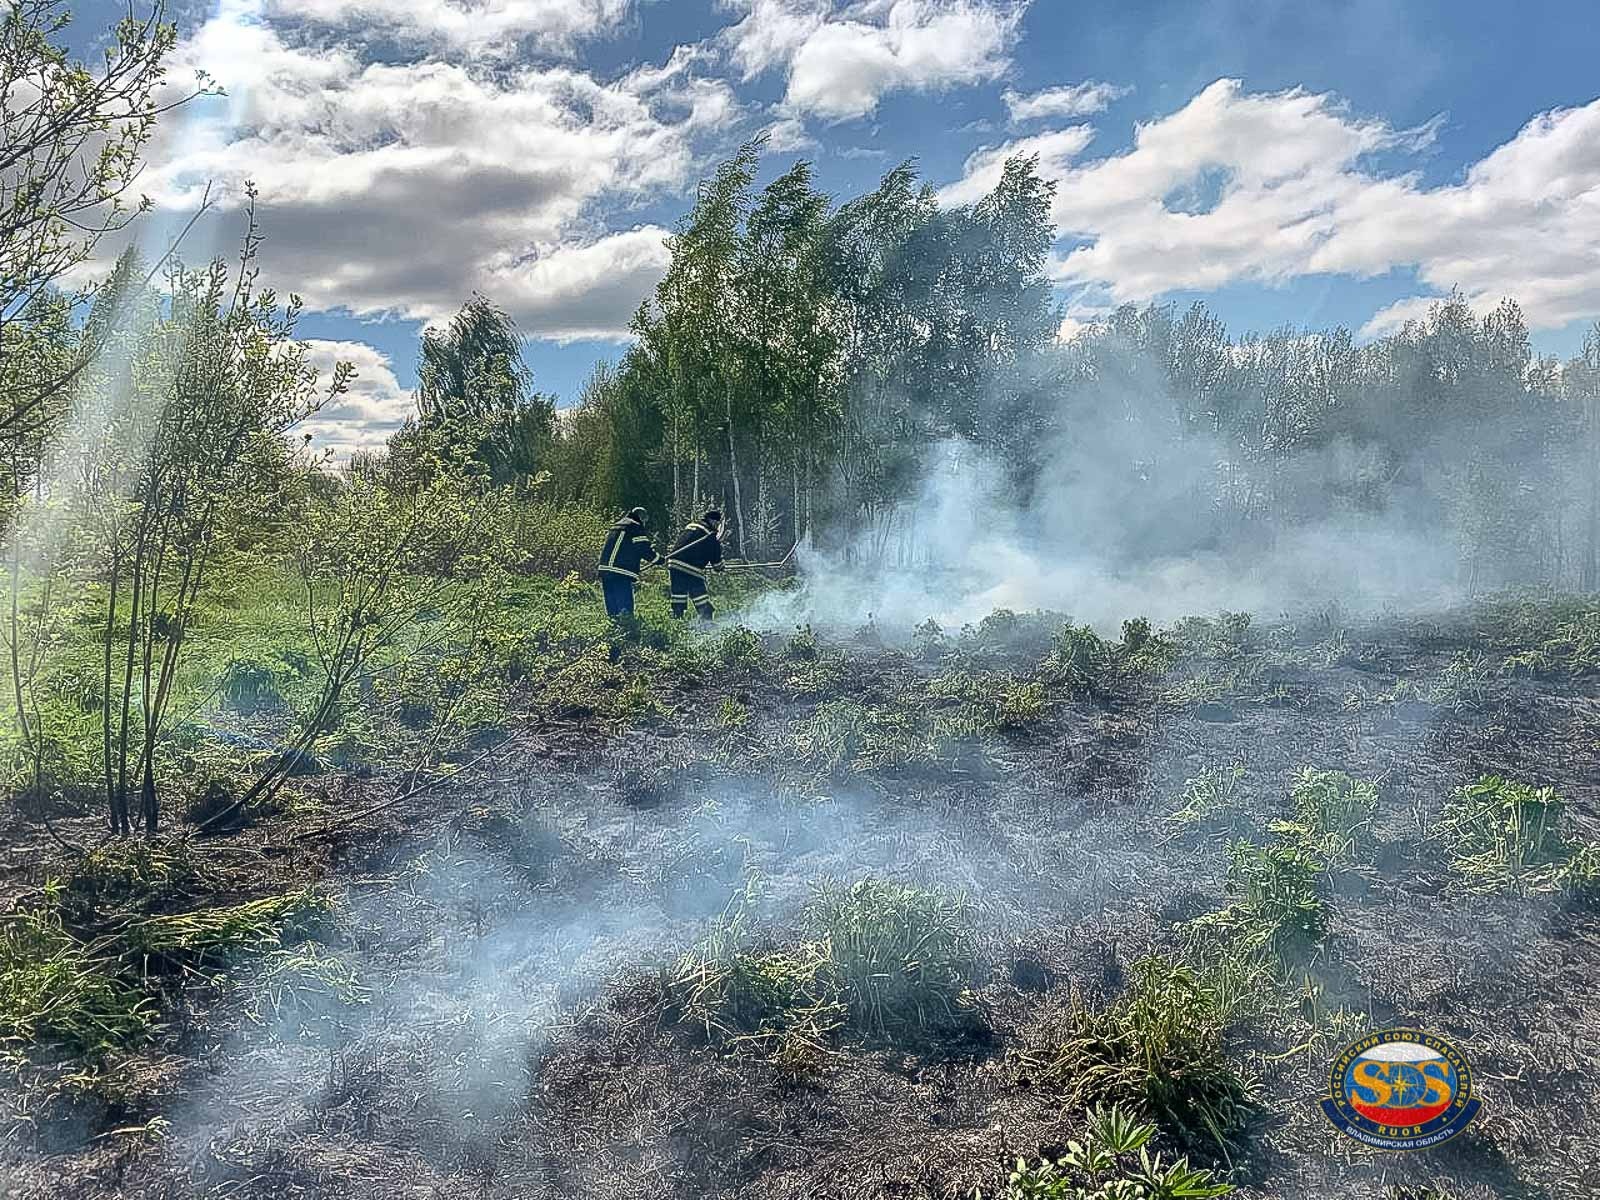 Спасатели потушили ландшафтный пожар в Камешковском районе 